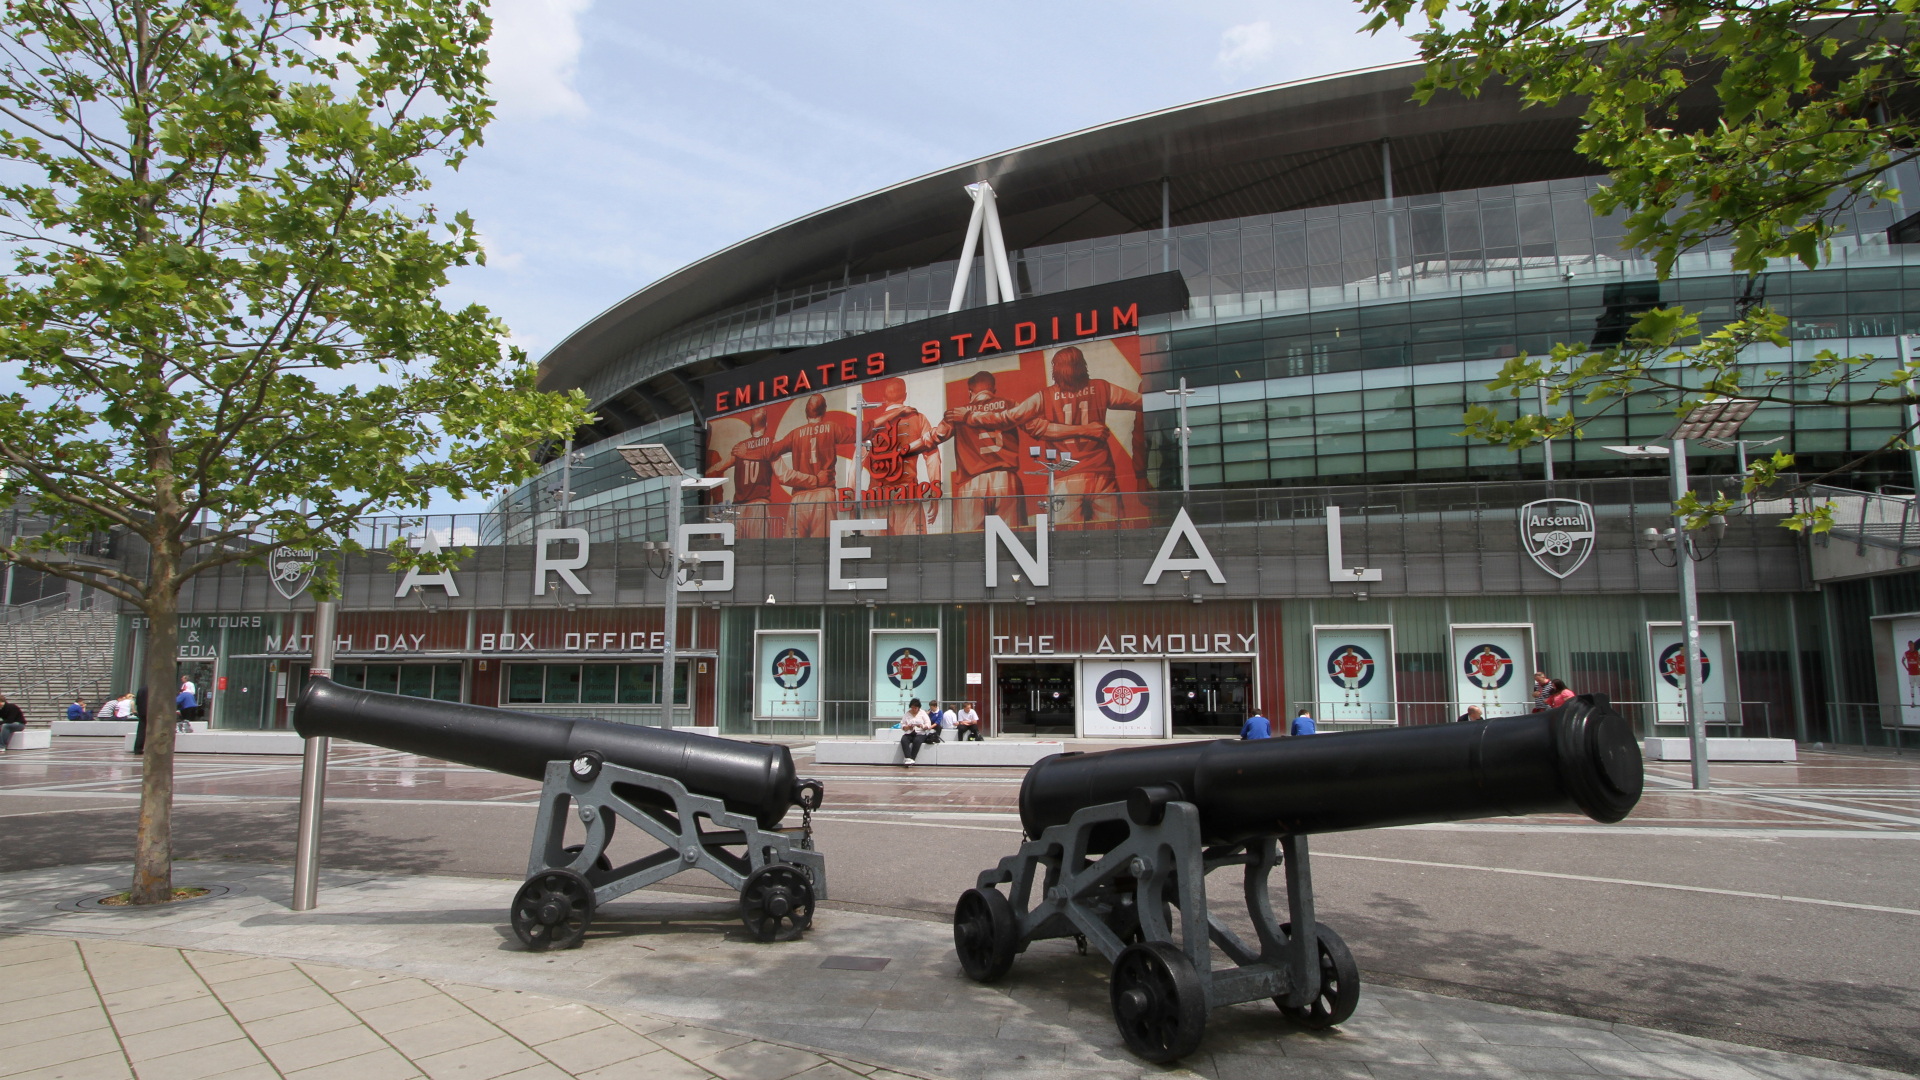 Cannons outside Arsenal Emirates Stadium